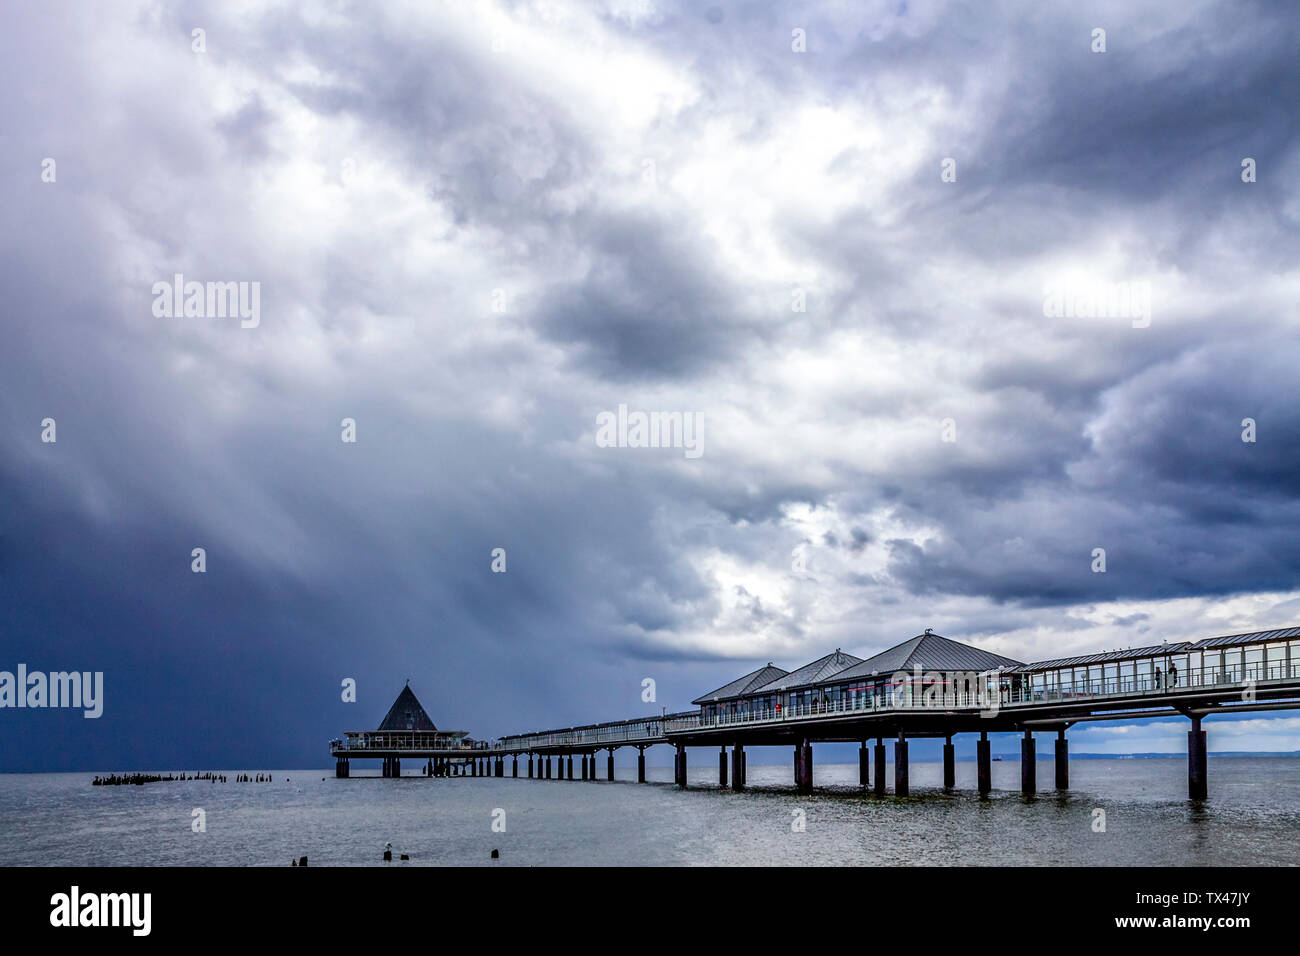 Allemagne, Usedom Heringsdorf, pier sous ciel nuageux Banque D'Images